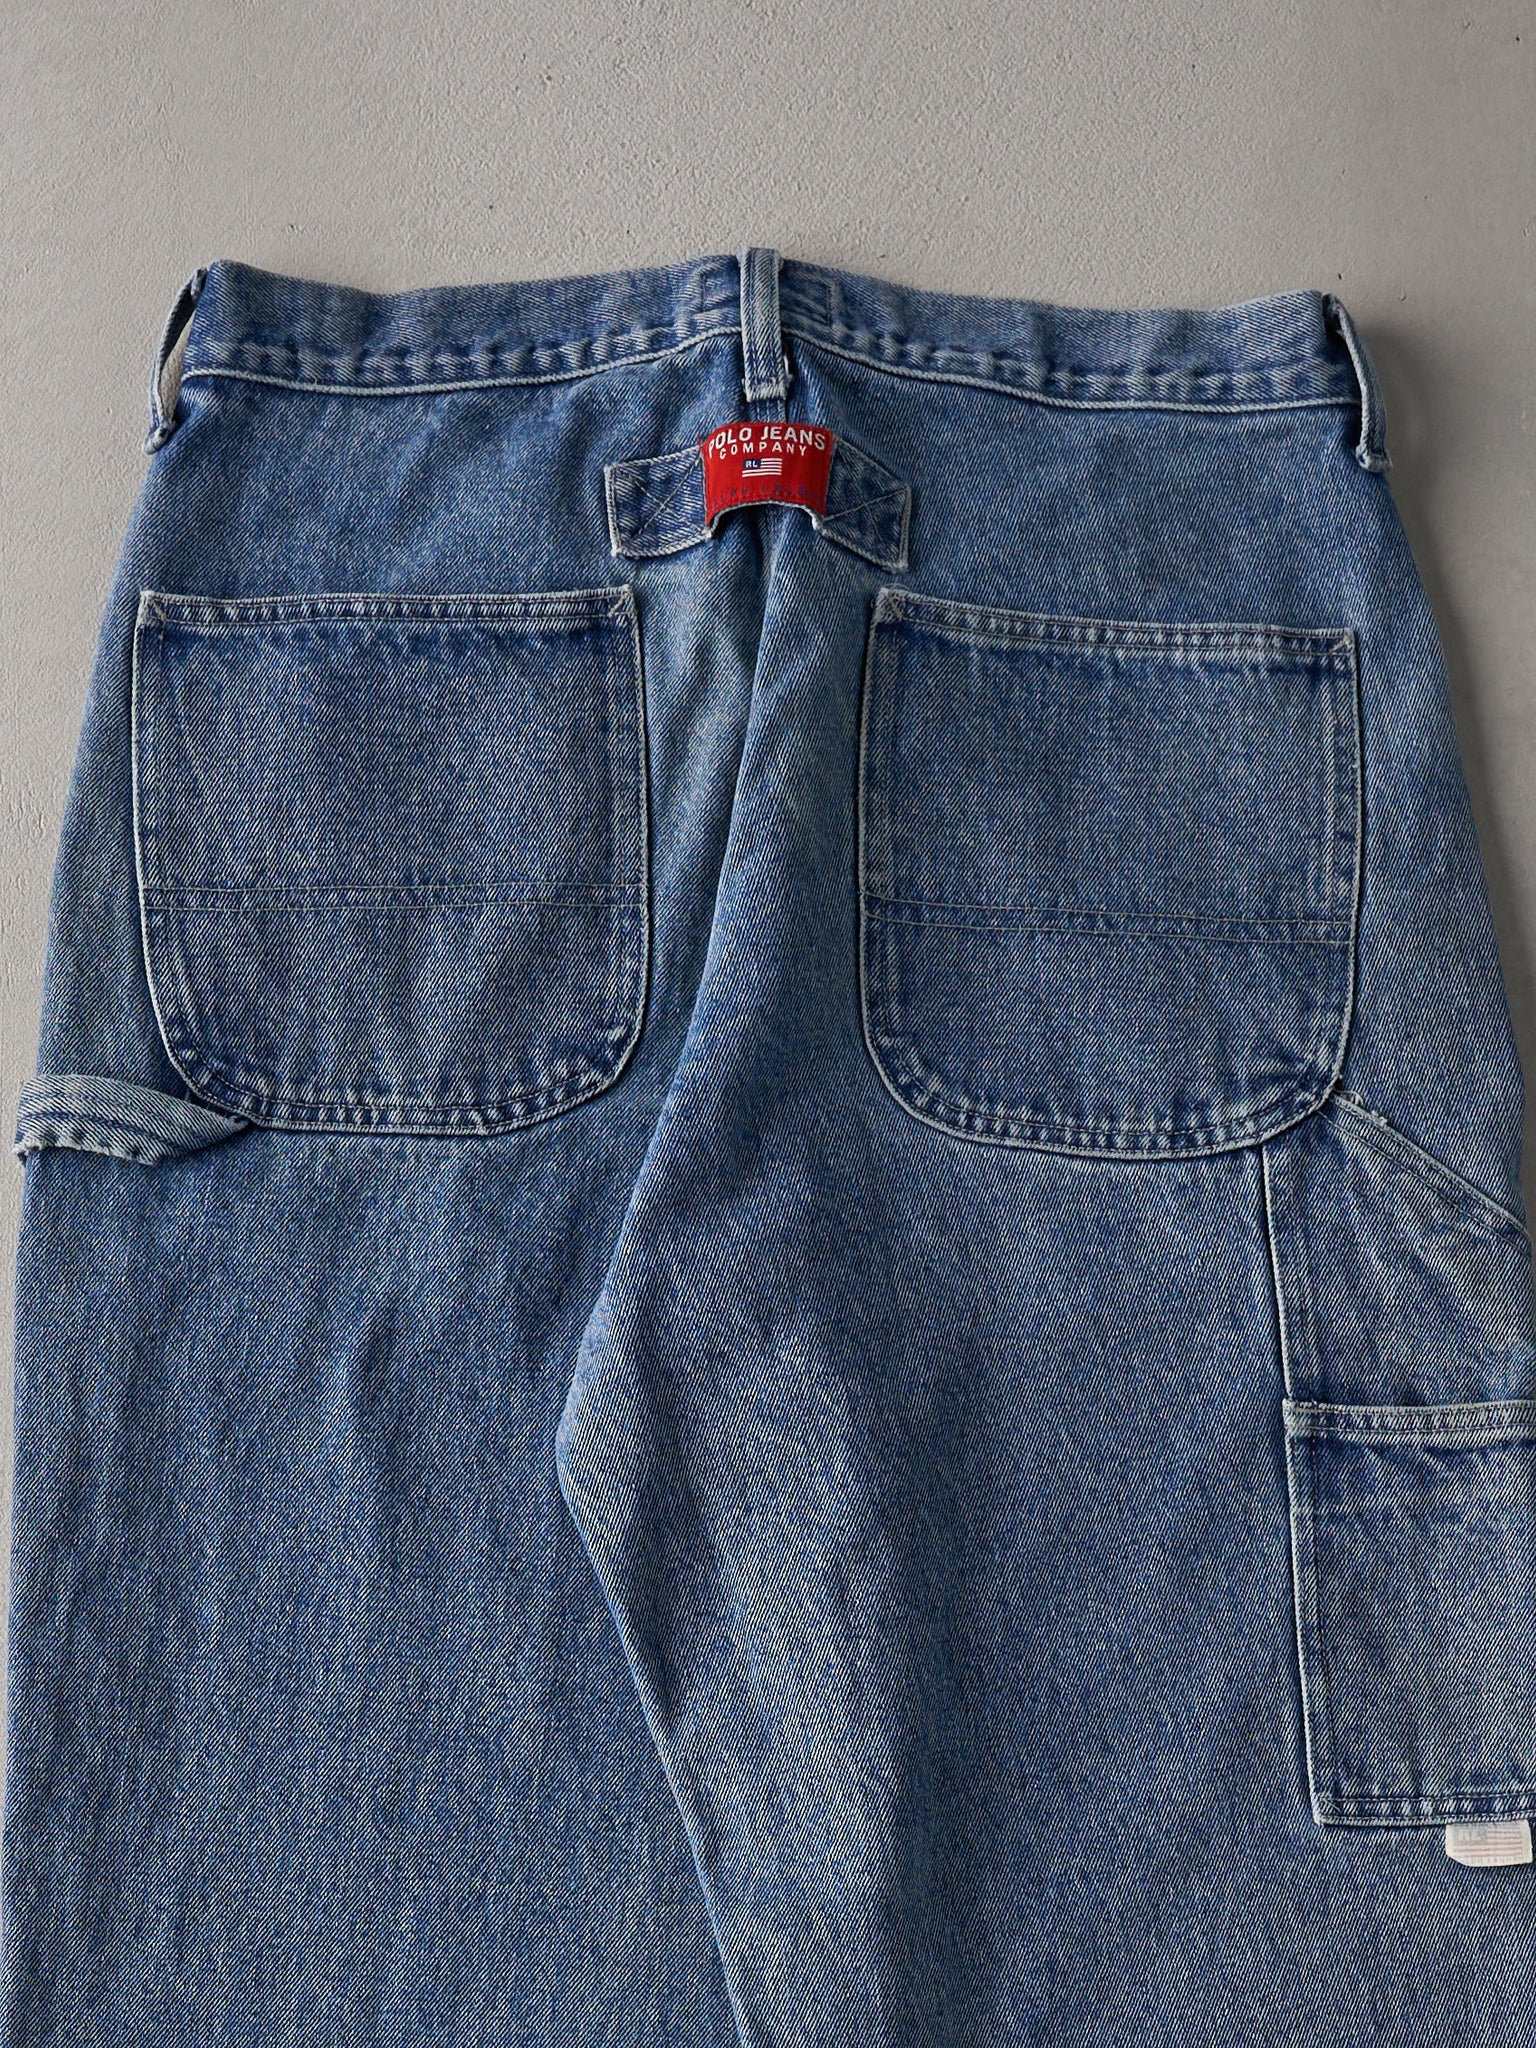 Vintage 90s Mid Wash Polo Jeans Co Ralph Lauren Denim Carpenter Pants (32x32)